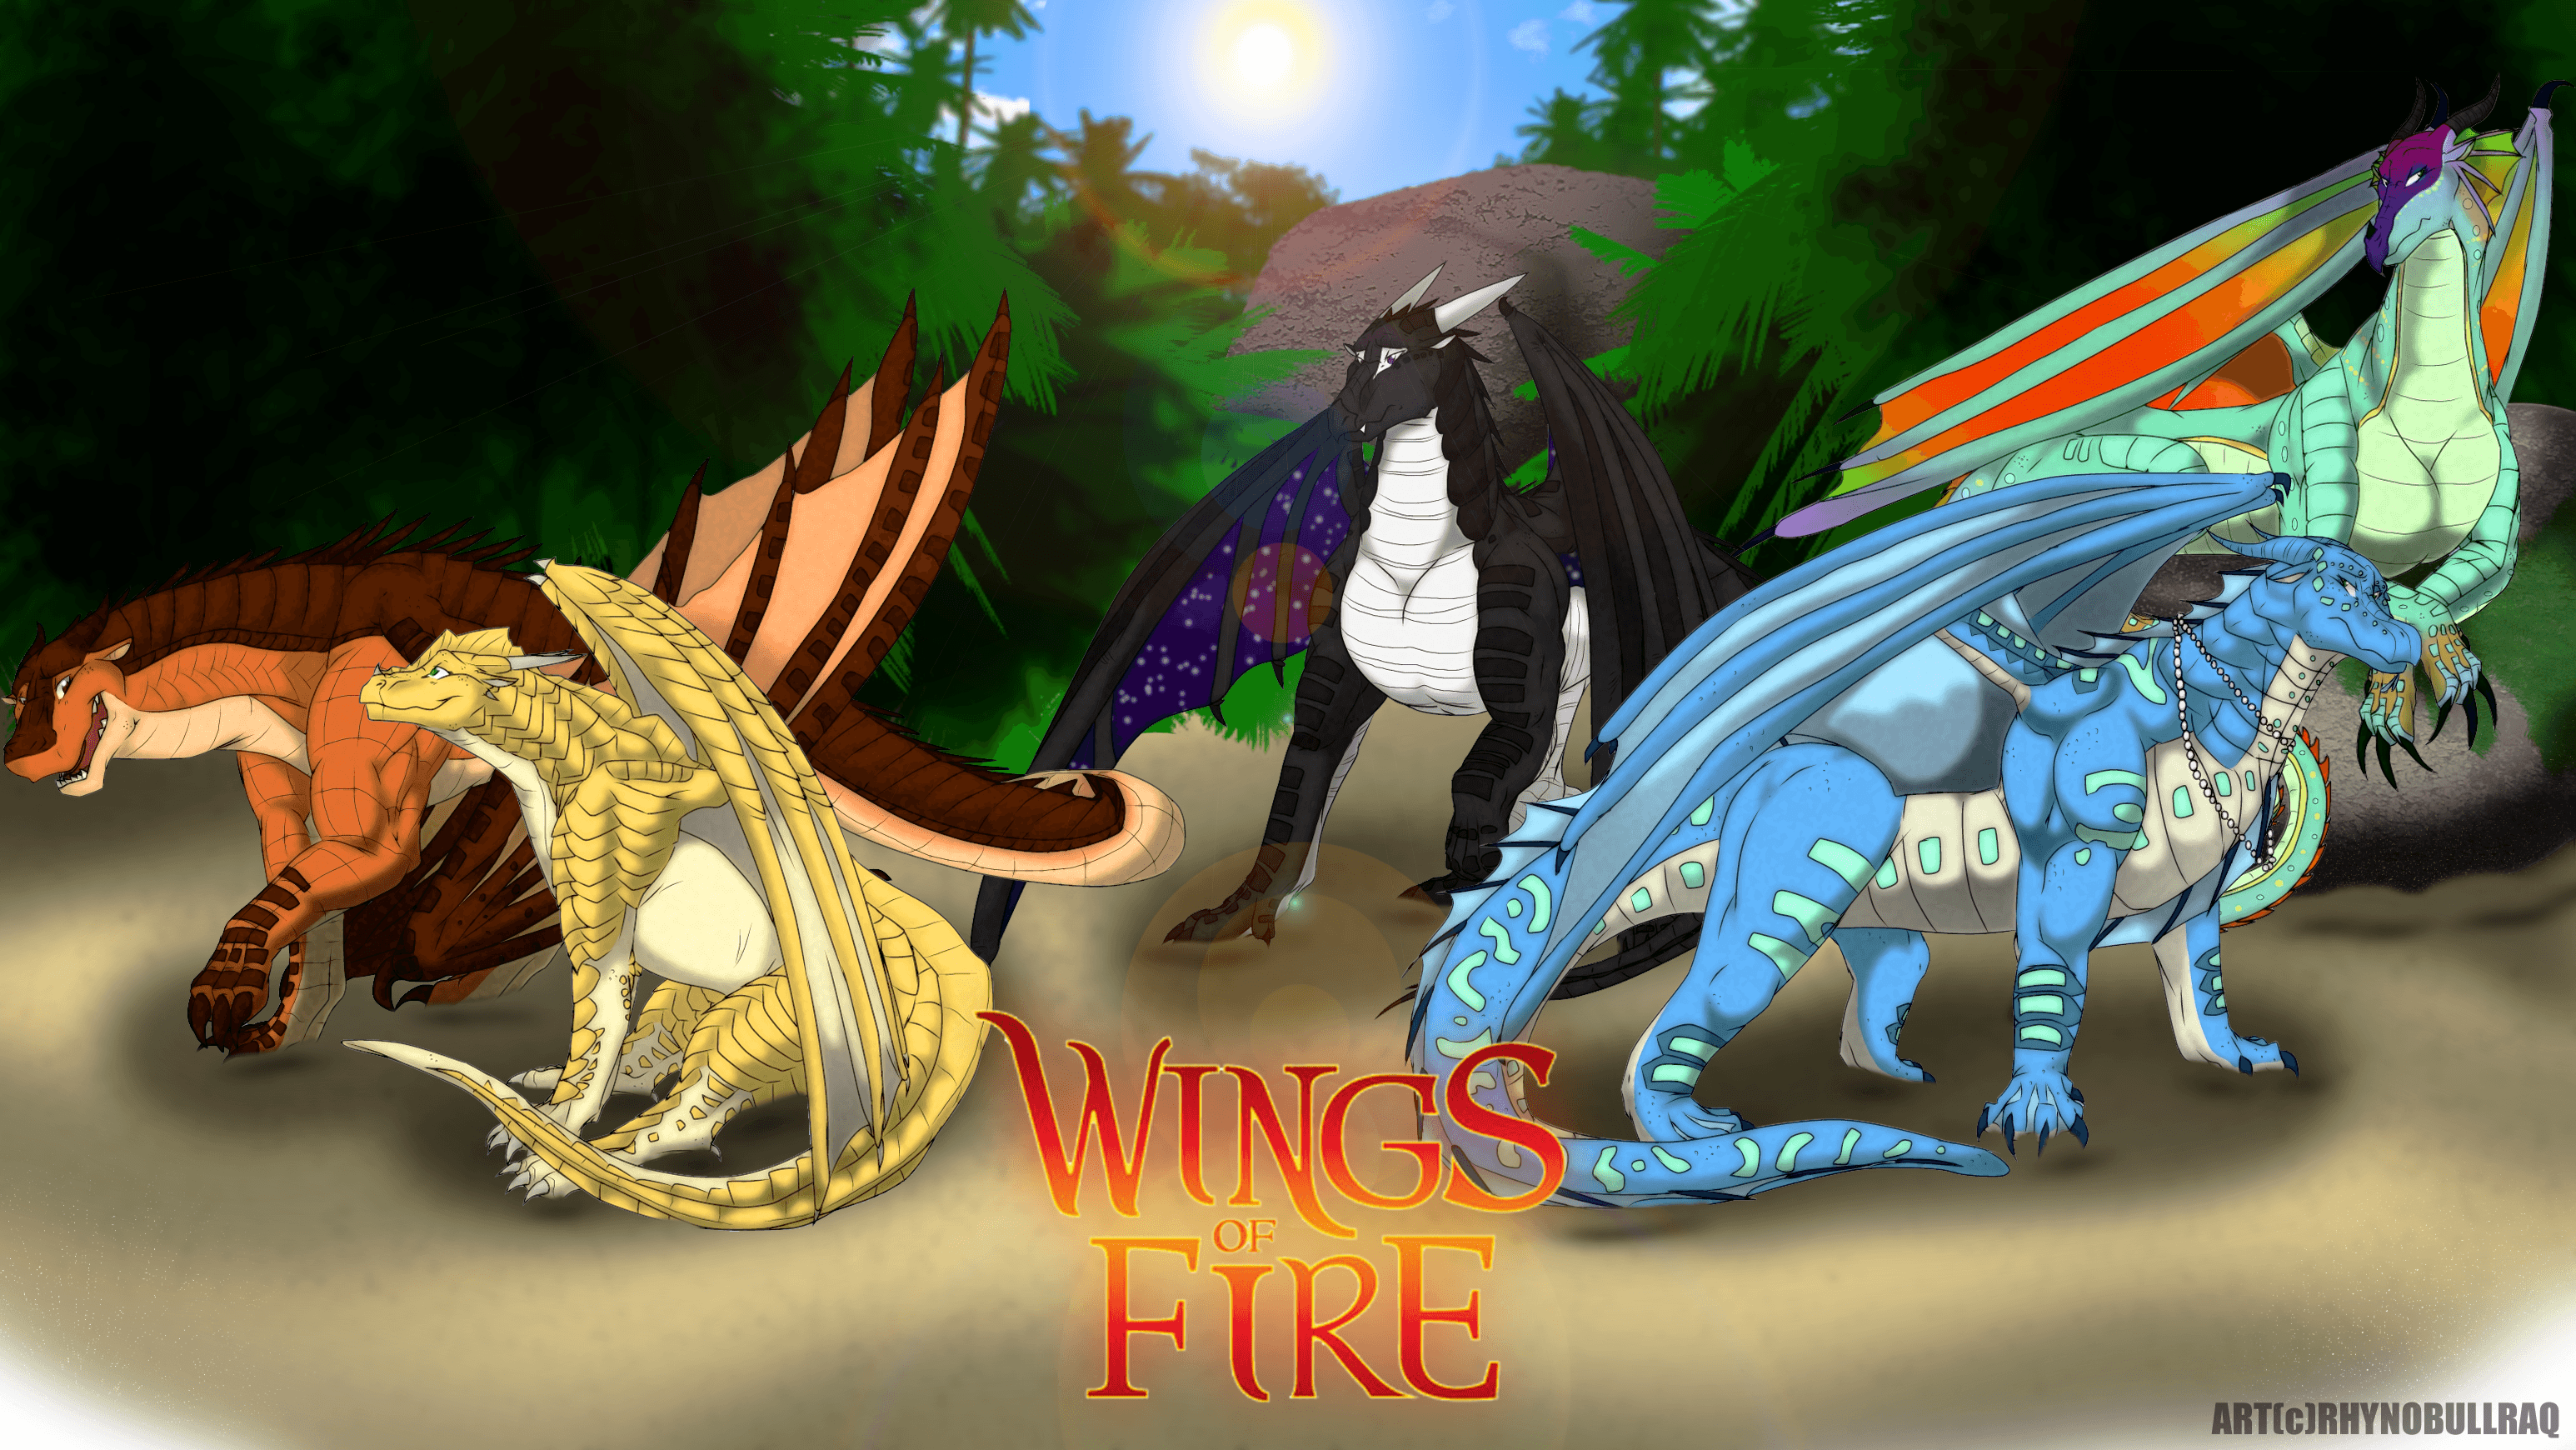 Wings of Fire 2nd Wallpaper